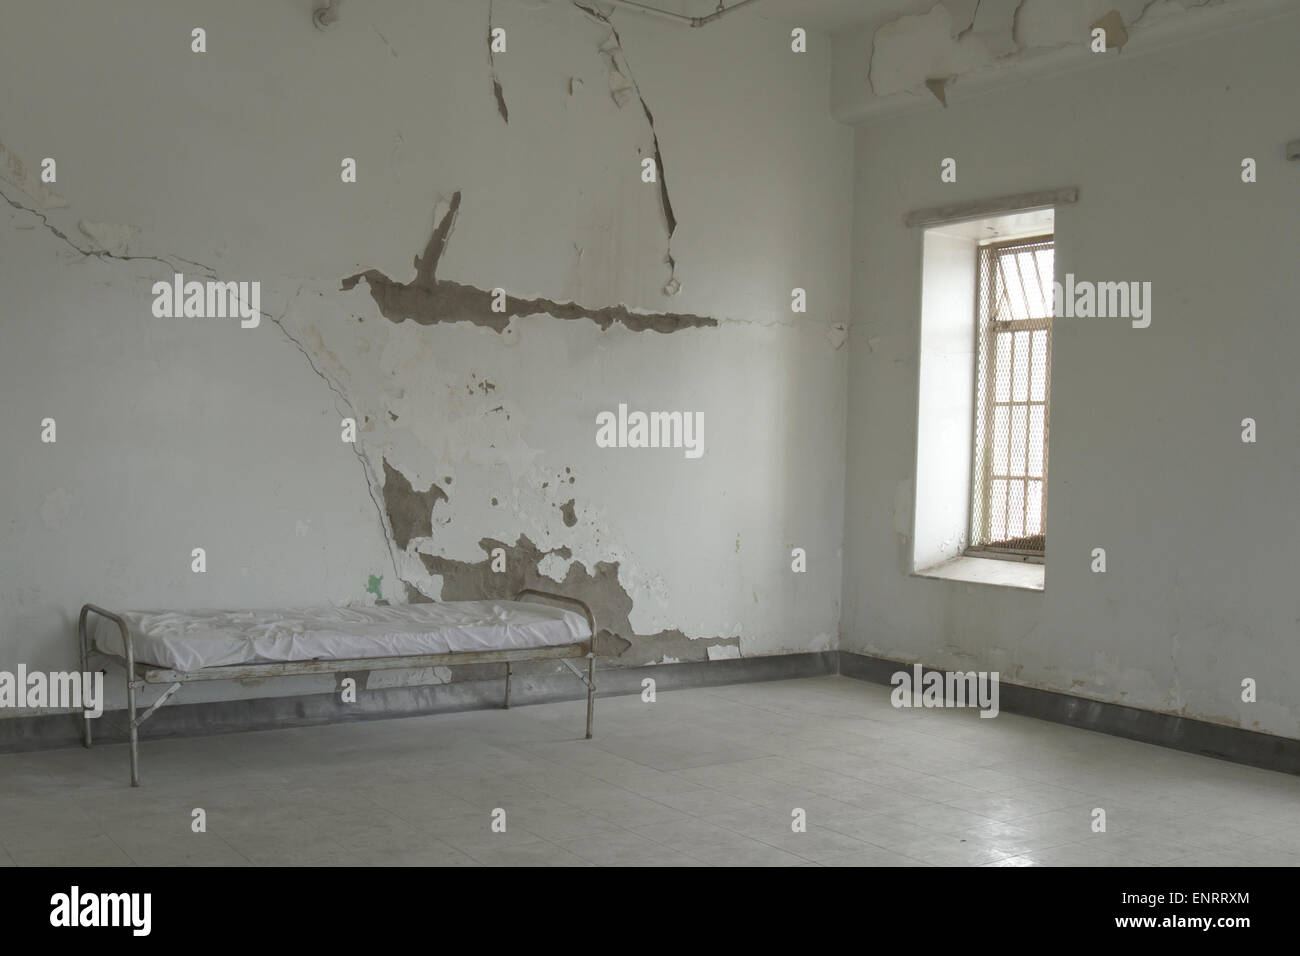 Kinderbett im leeren Raum der alten Geisteskrankheit Asyl. Stockfoto